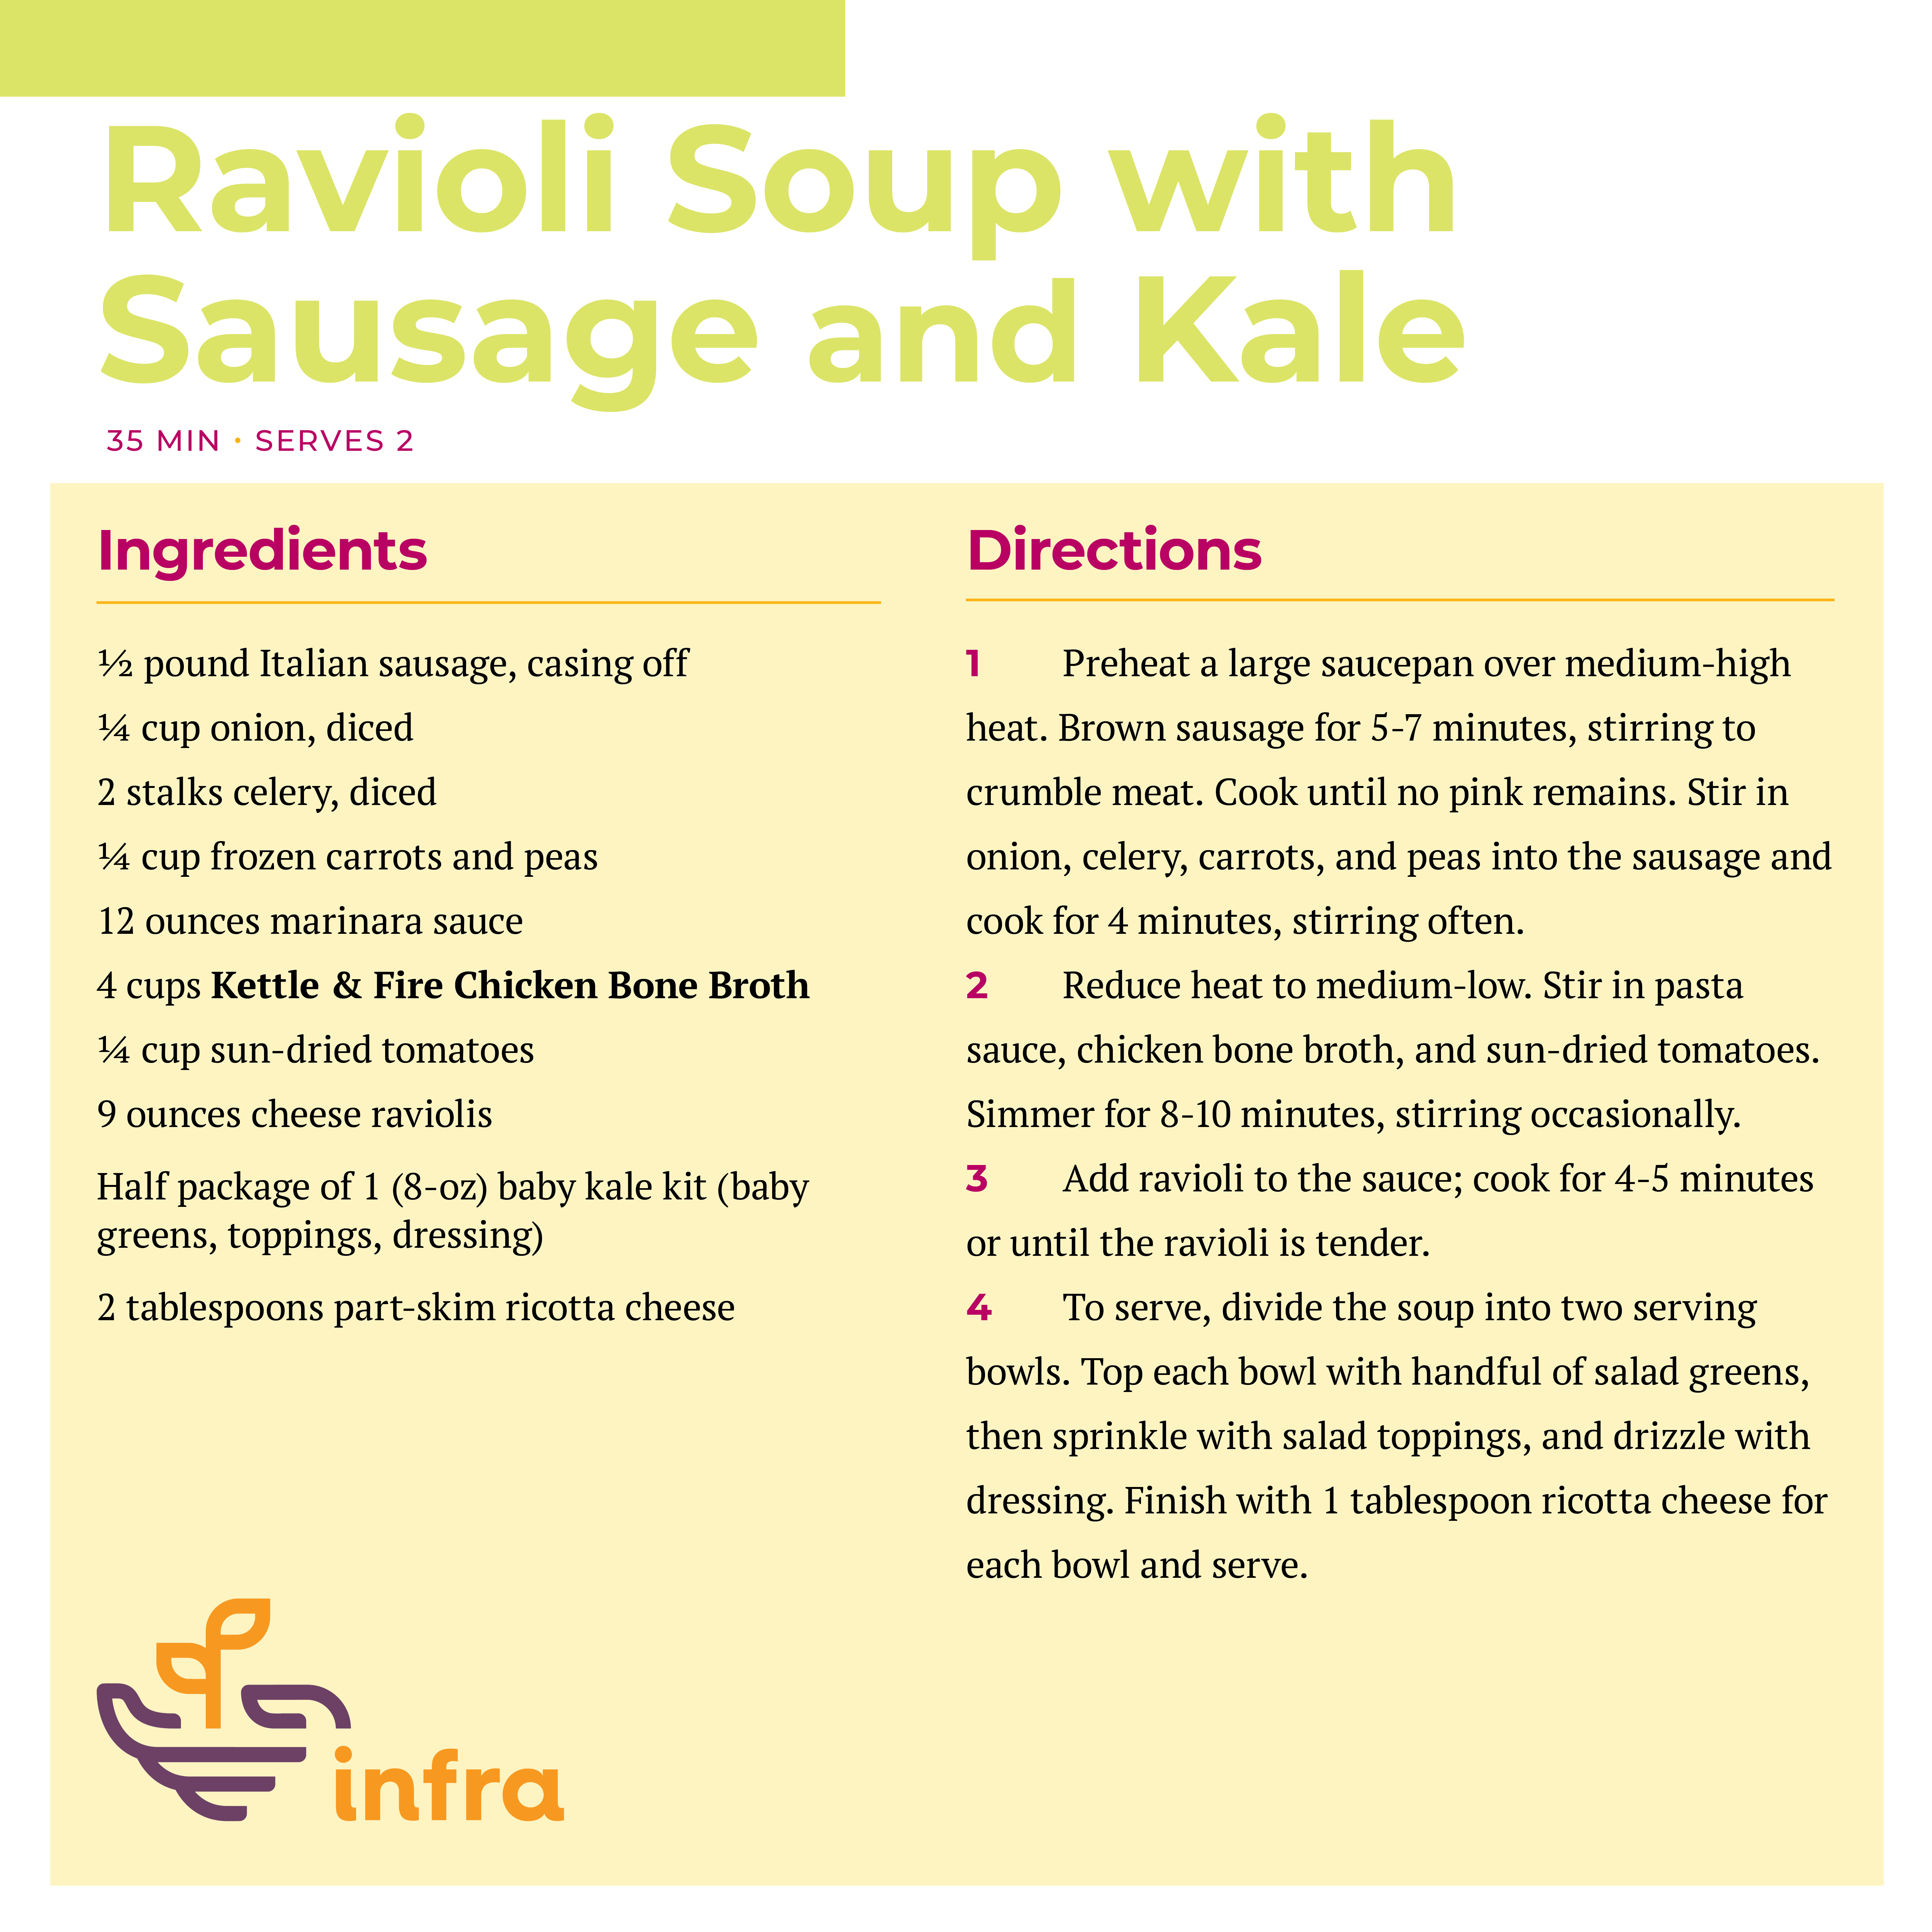 Ravioli Soup with Sausage and Kale